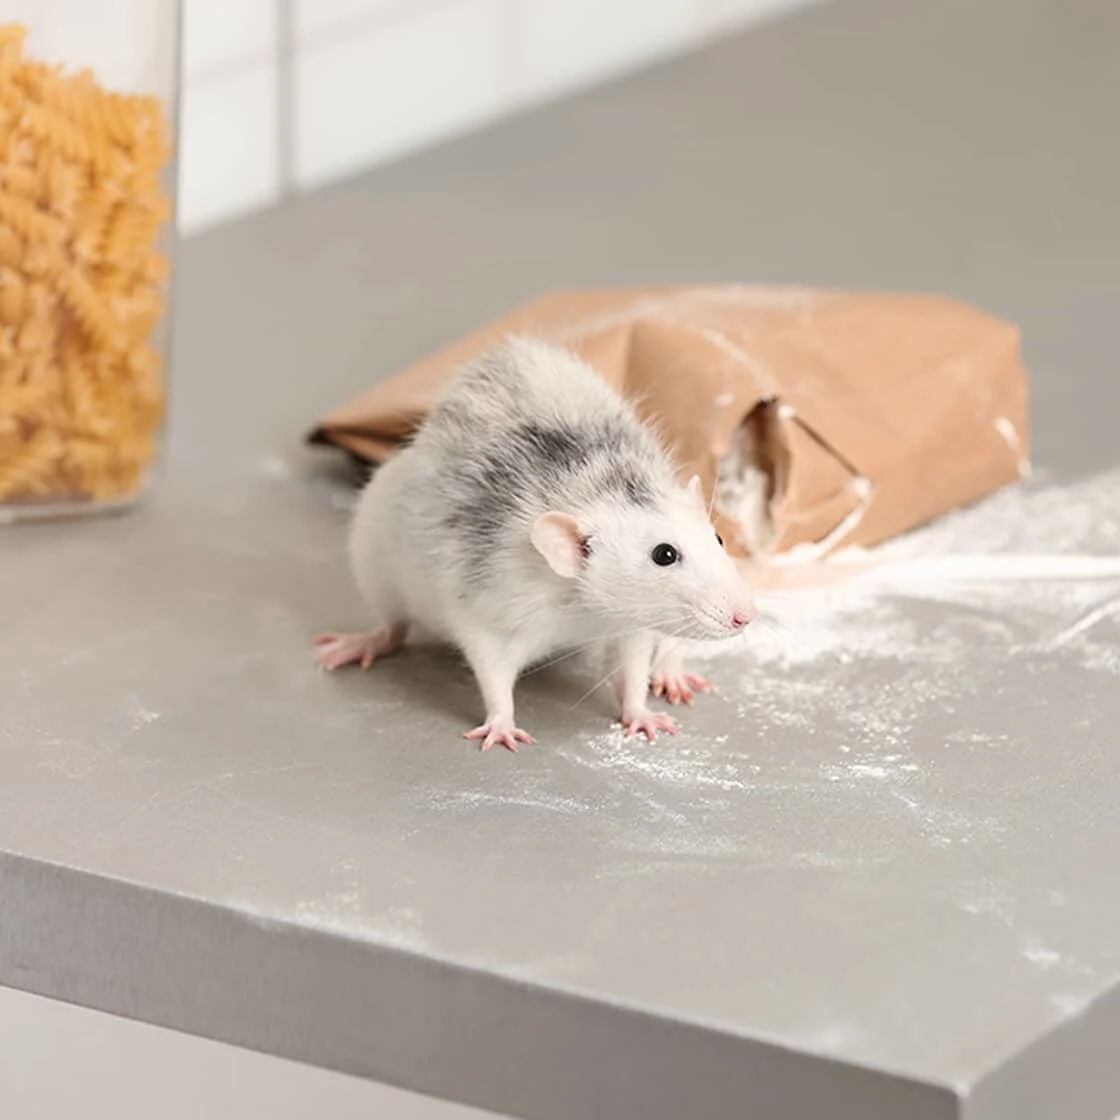 Des souris dans la maison : les moyens de remédier au problème